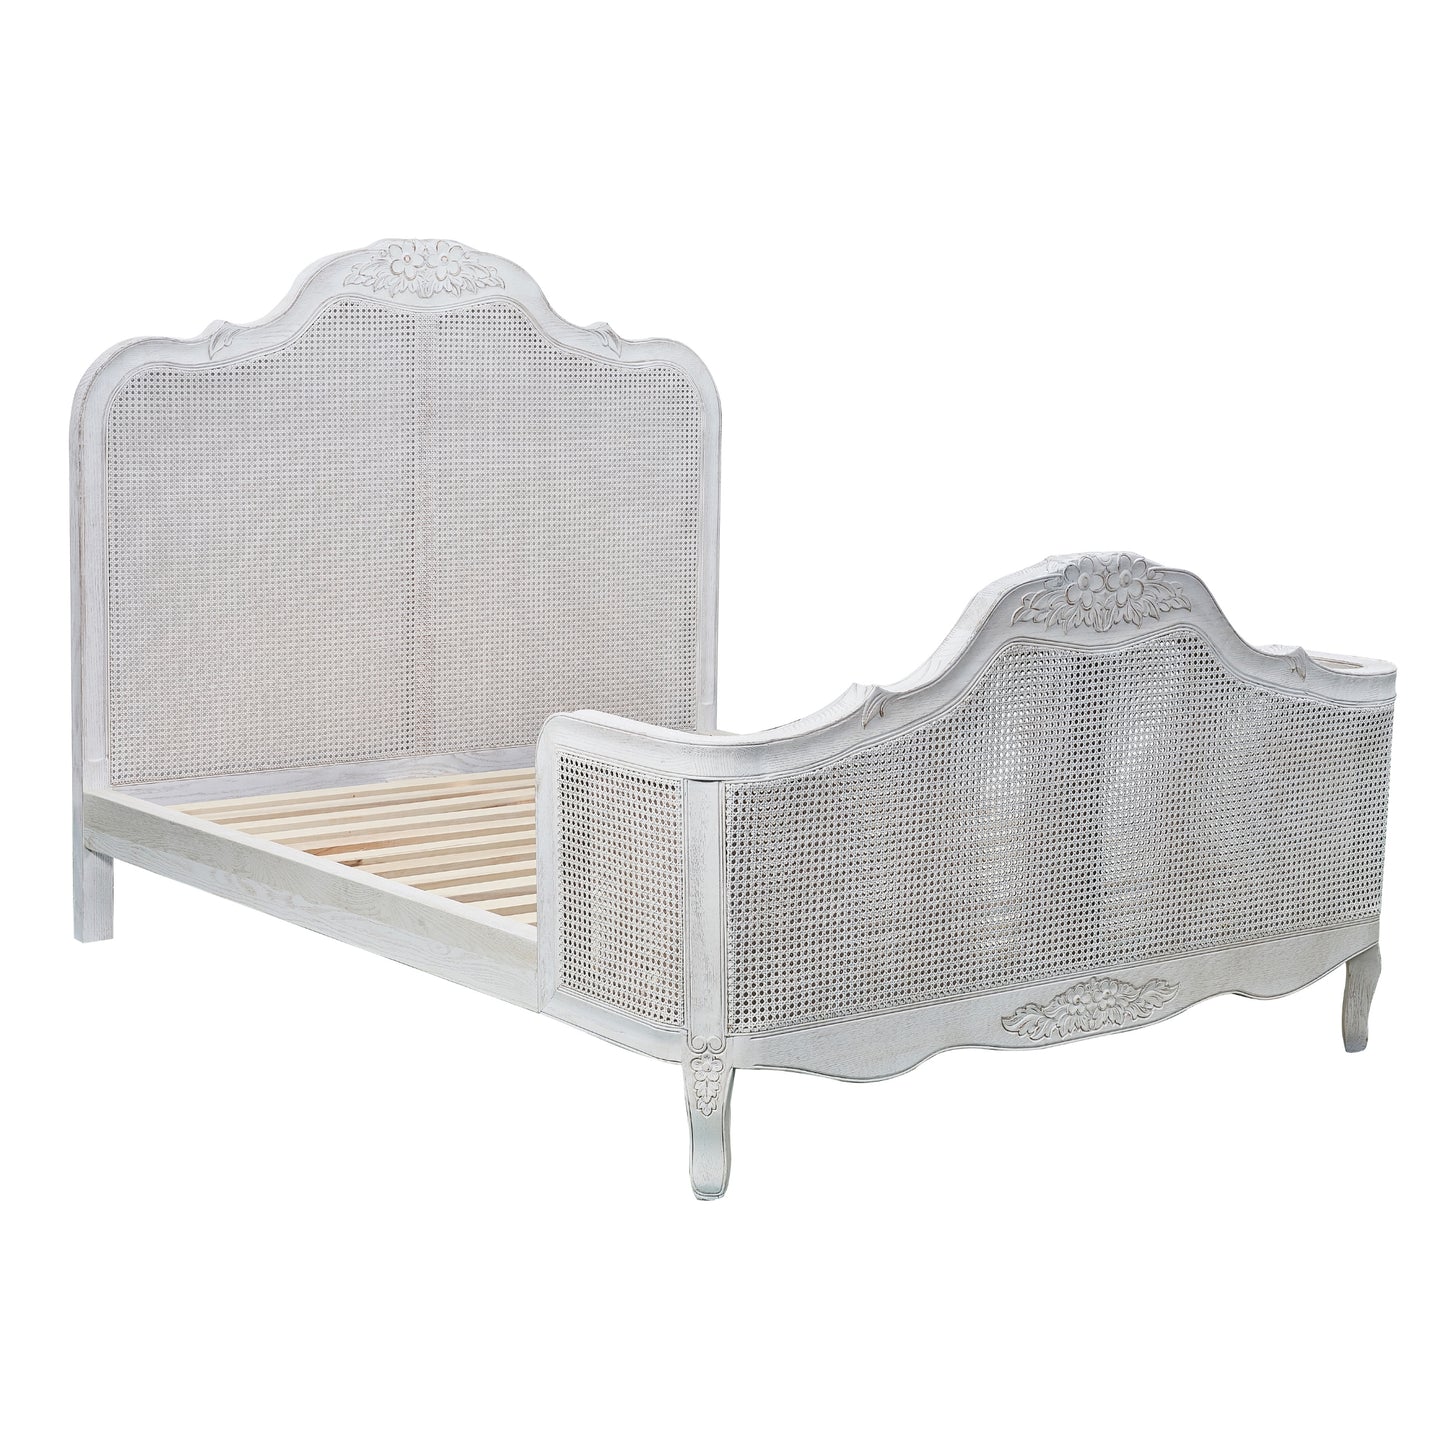 Alice 5pc King Bed Suite Bedside Dresser Bedroom Rattan Furniture Package White